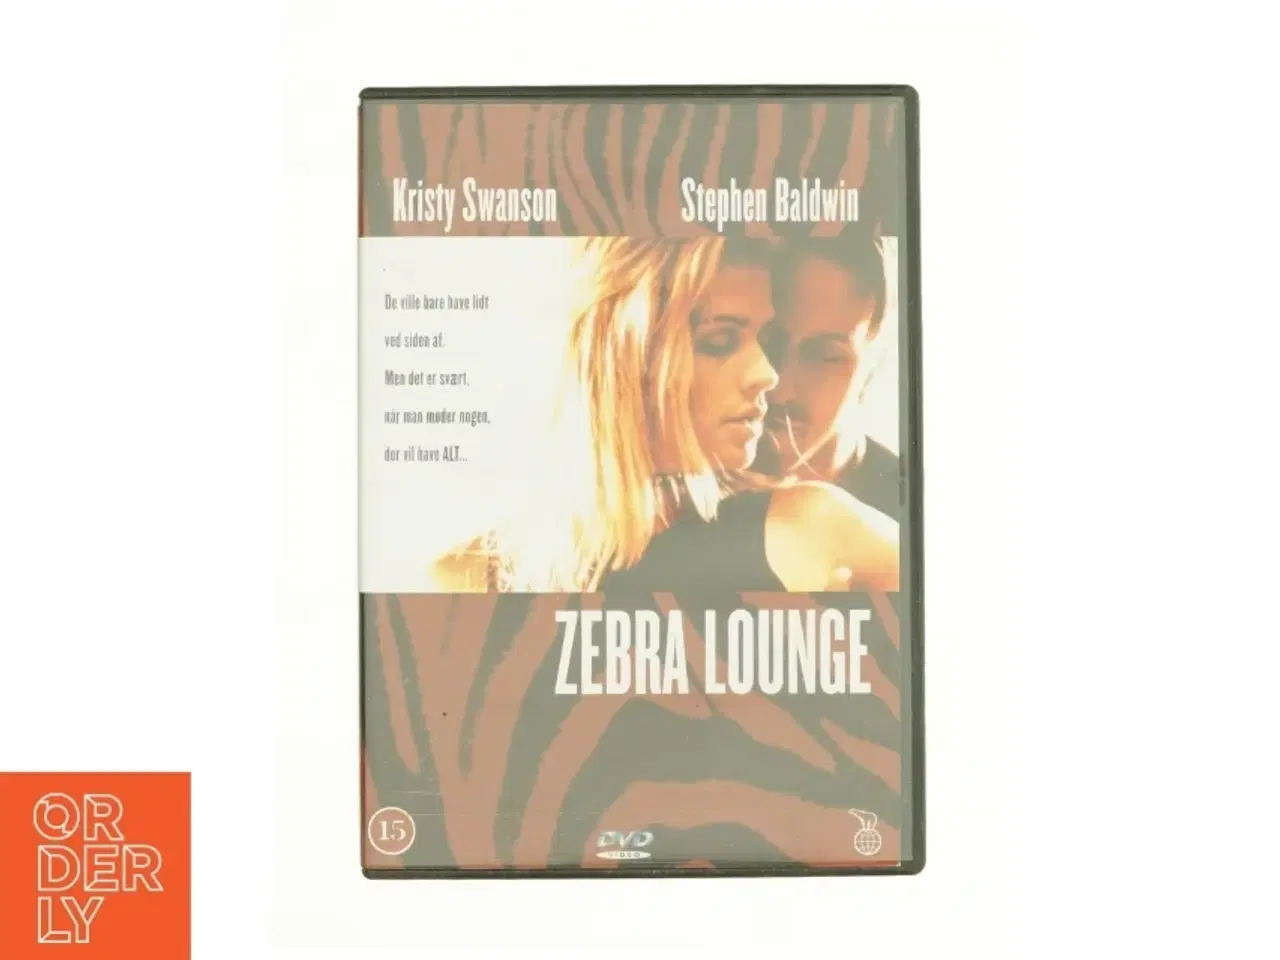 Billede 1 - Zebra Lounge fra DVD